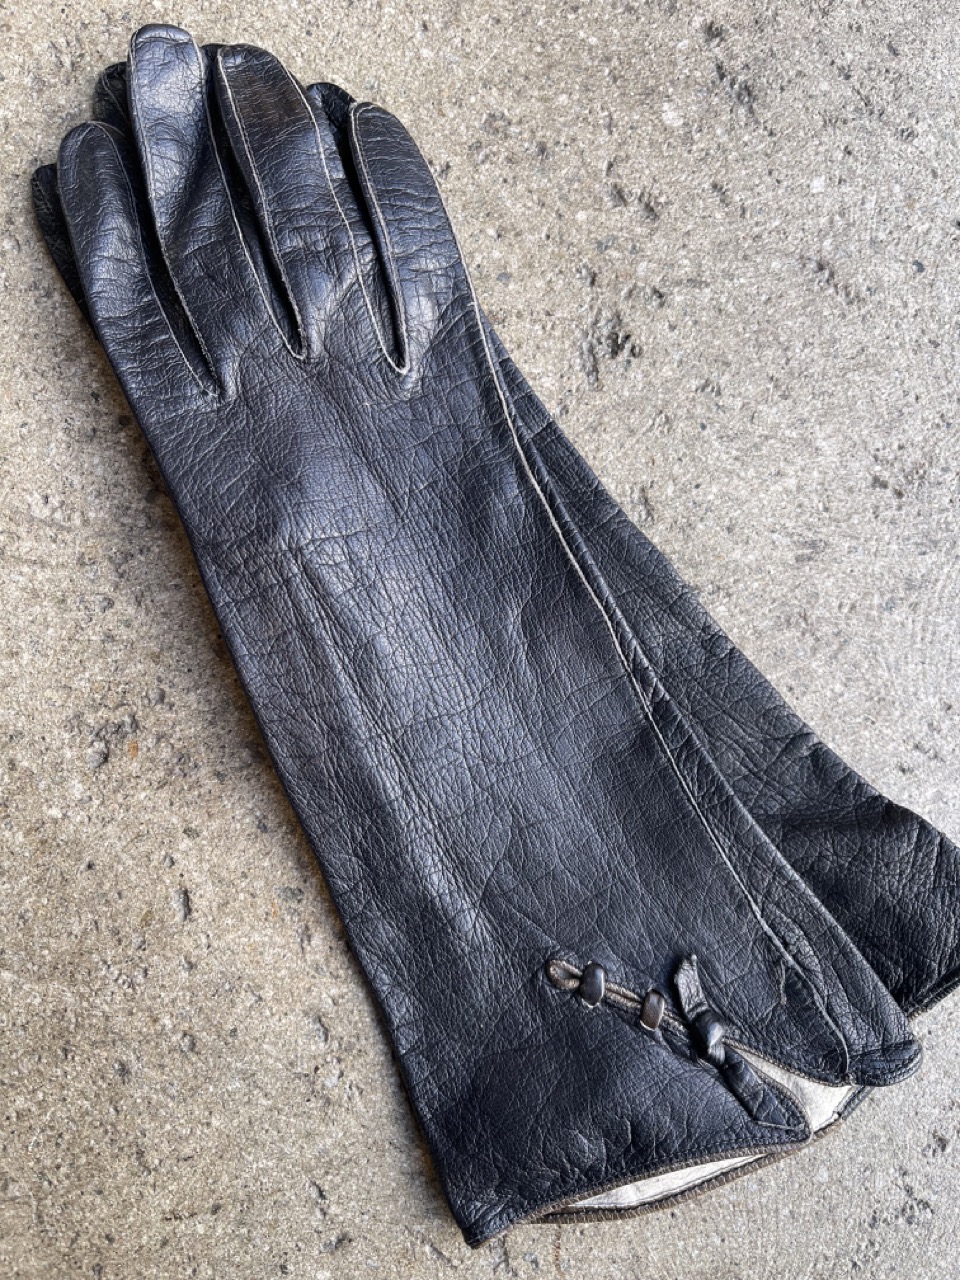 Vintage 60s Black Leather Gloves